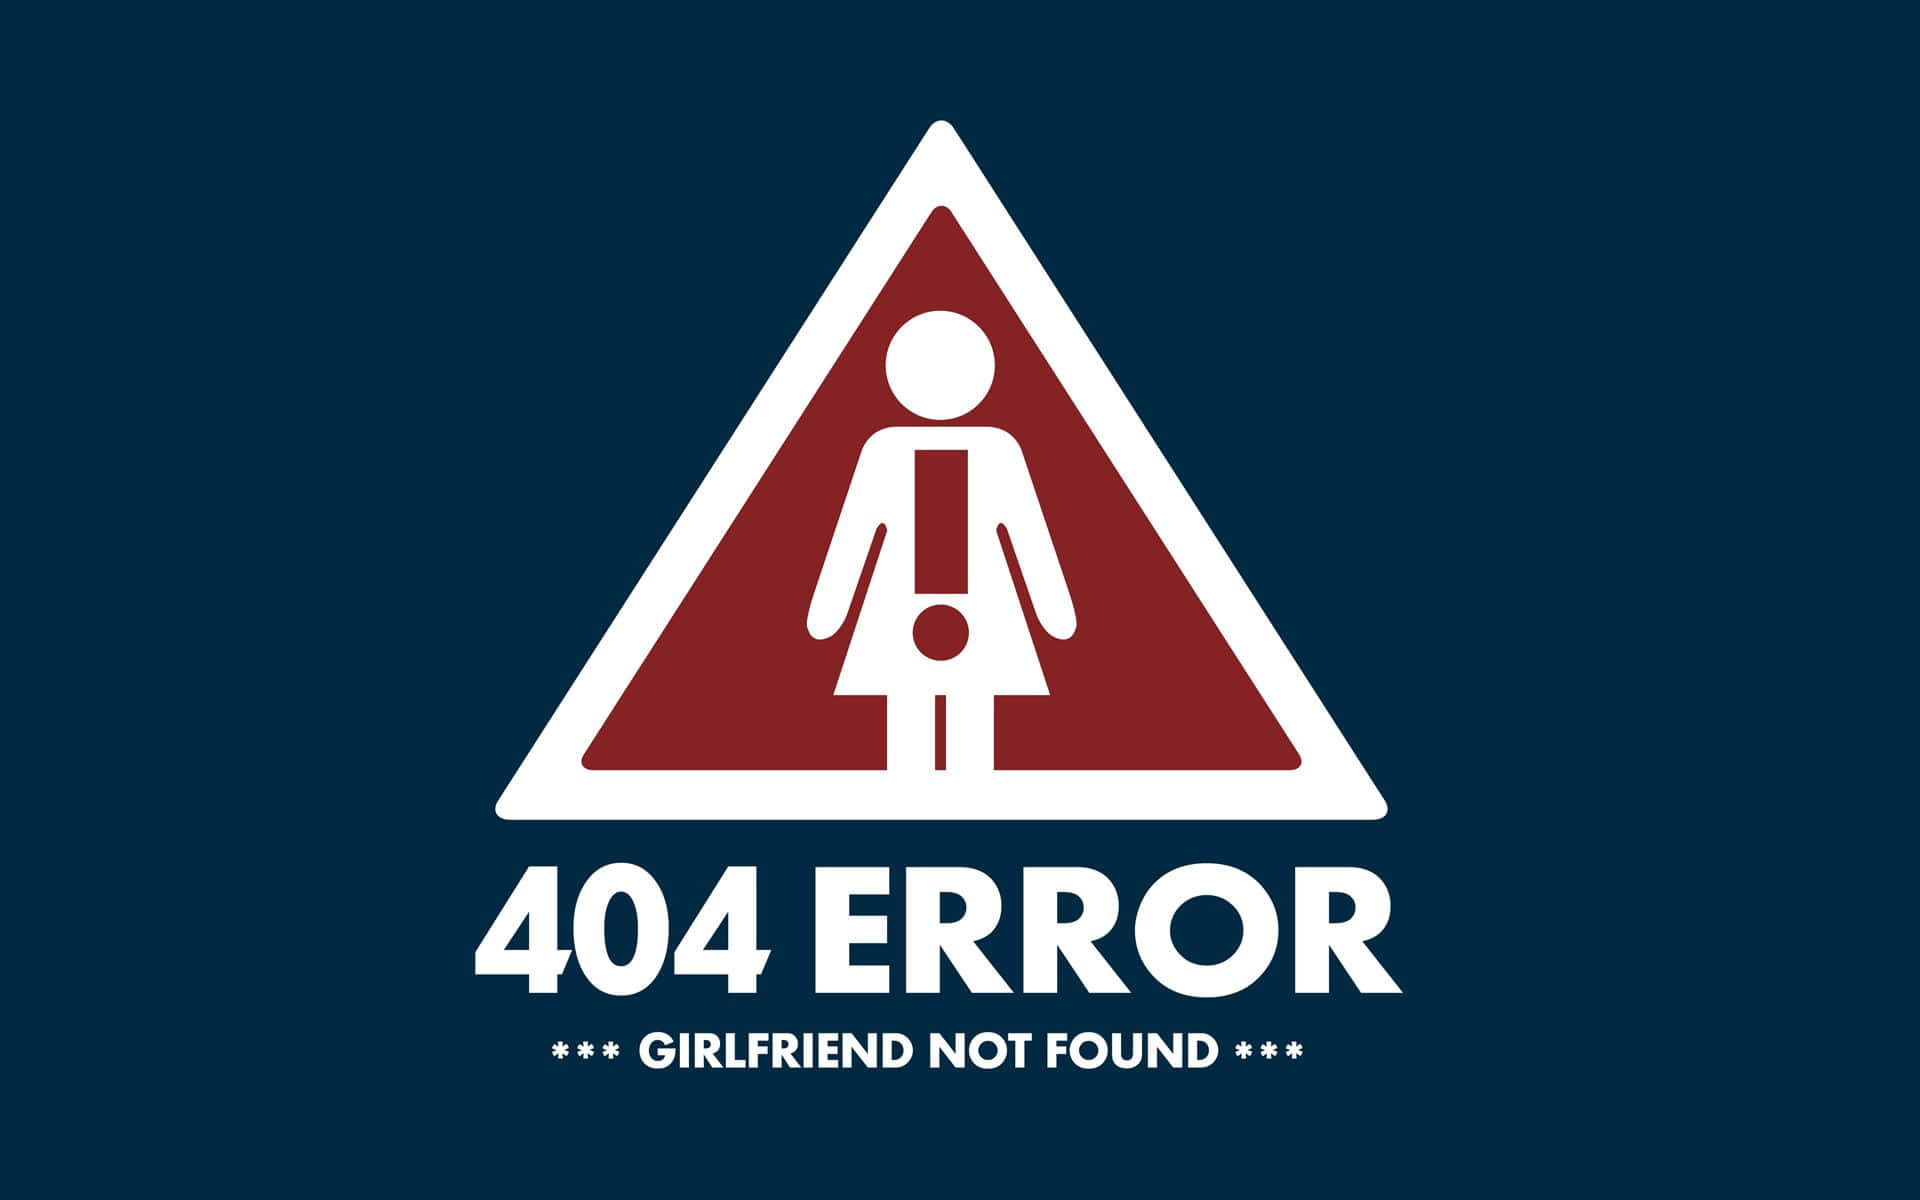 404 Error Girlfriend Not Found Background